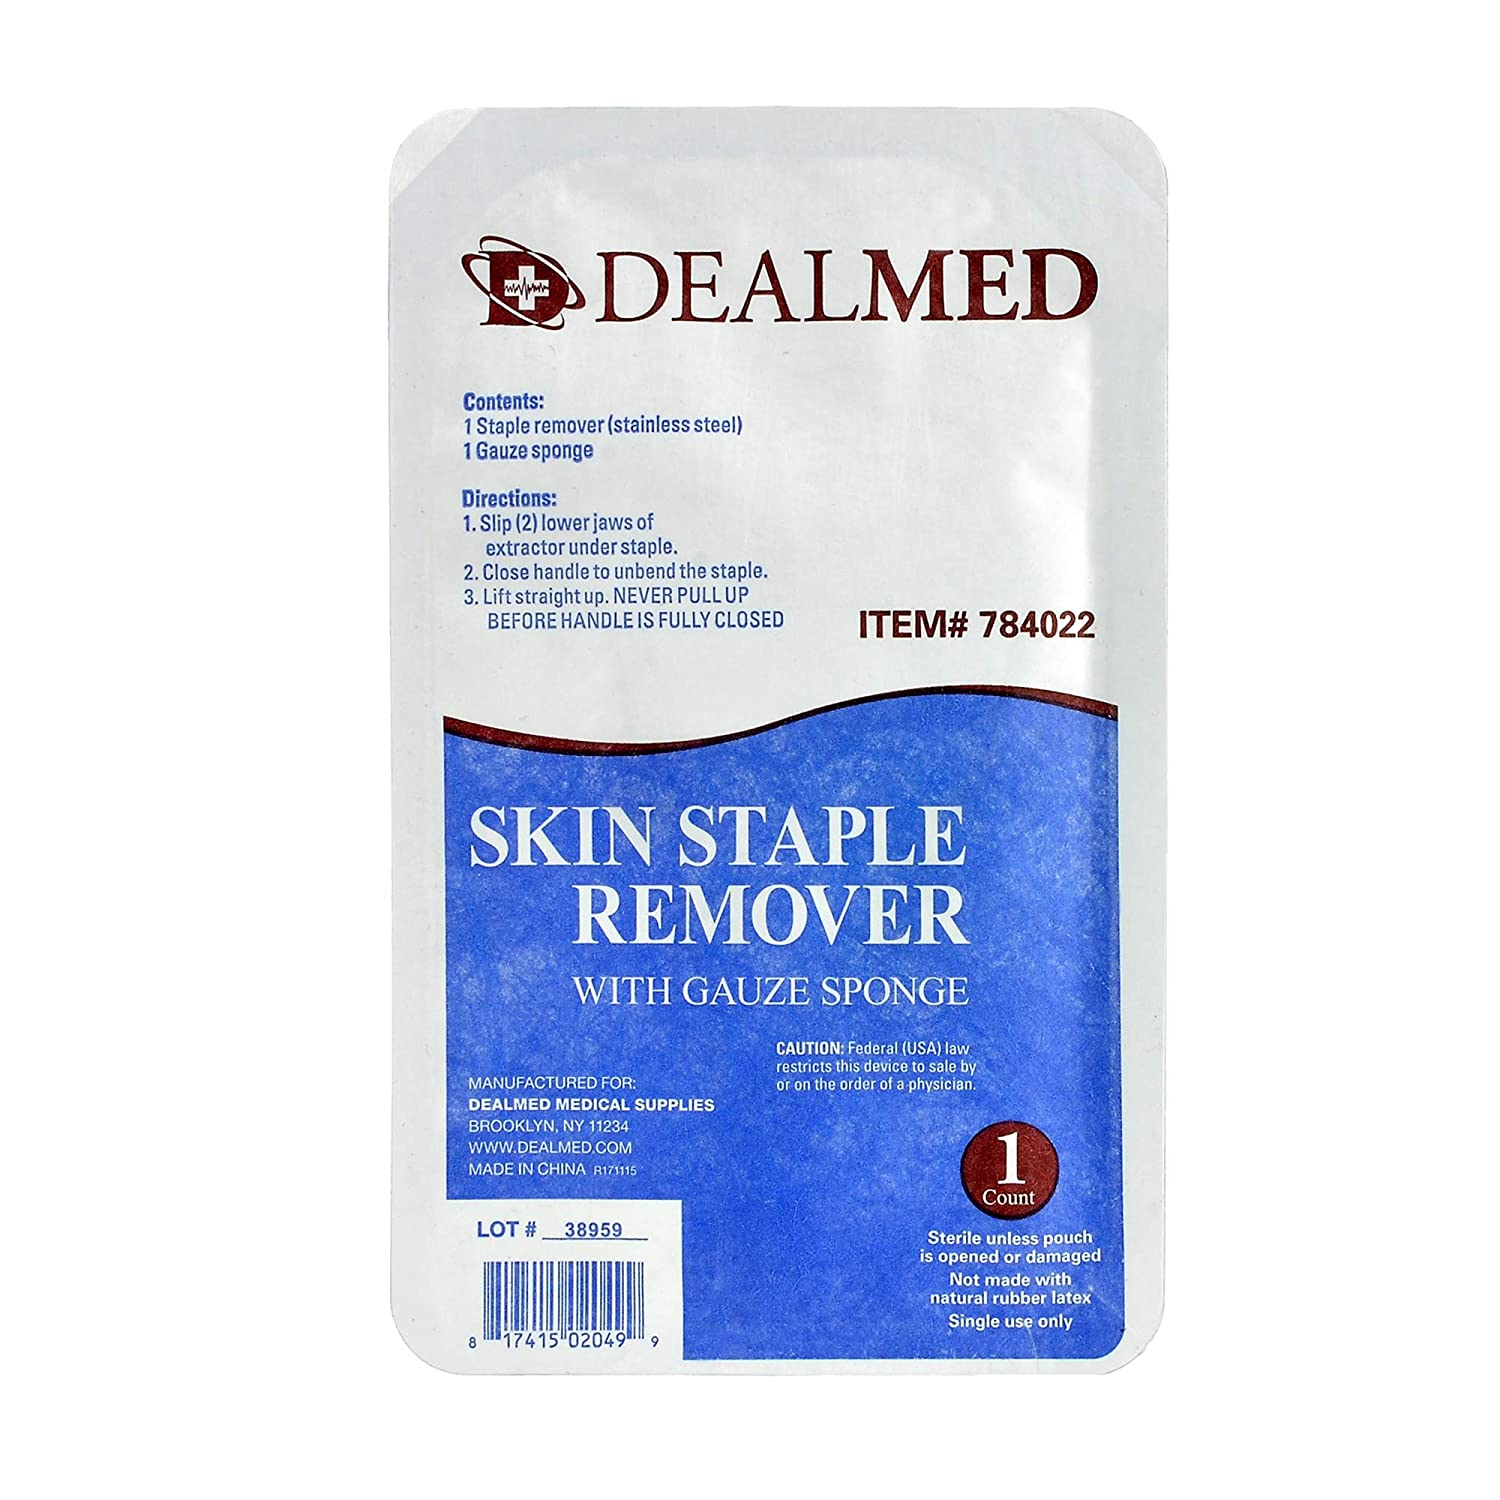 Sterile Skin Staple Removal Kit